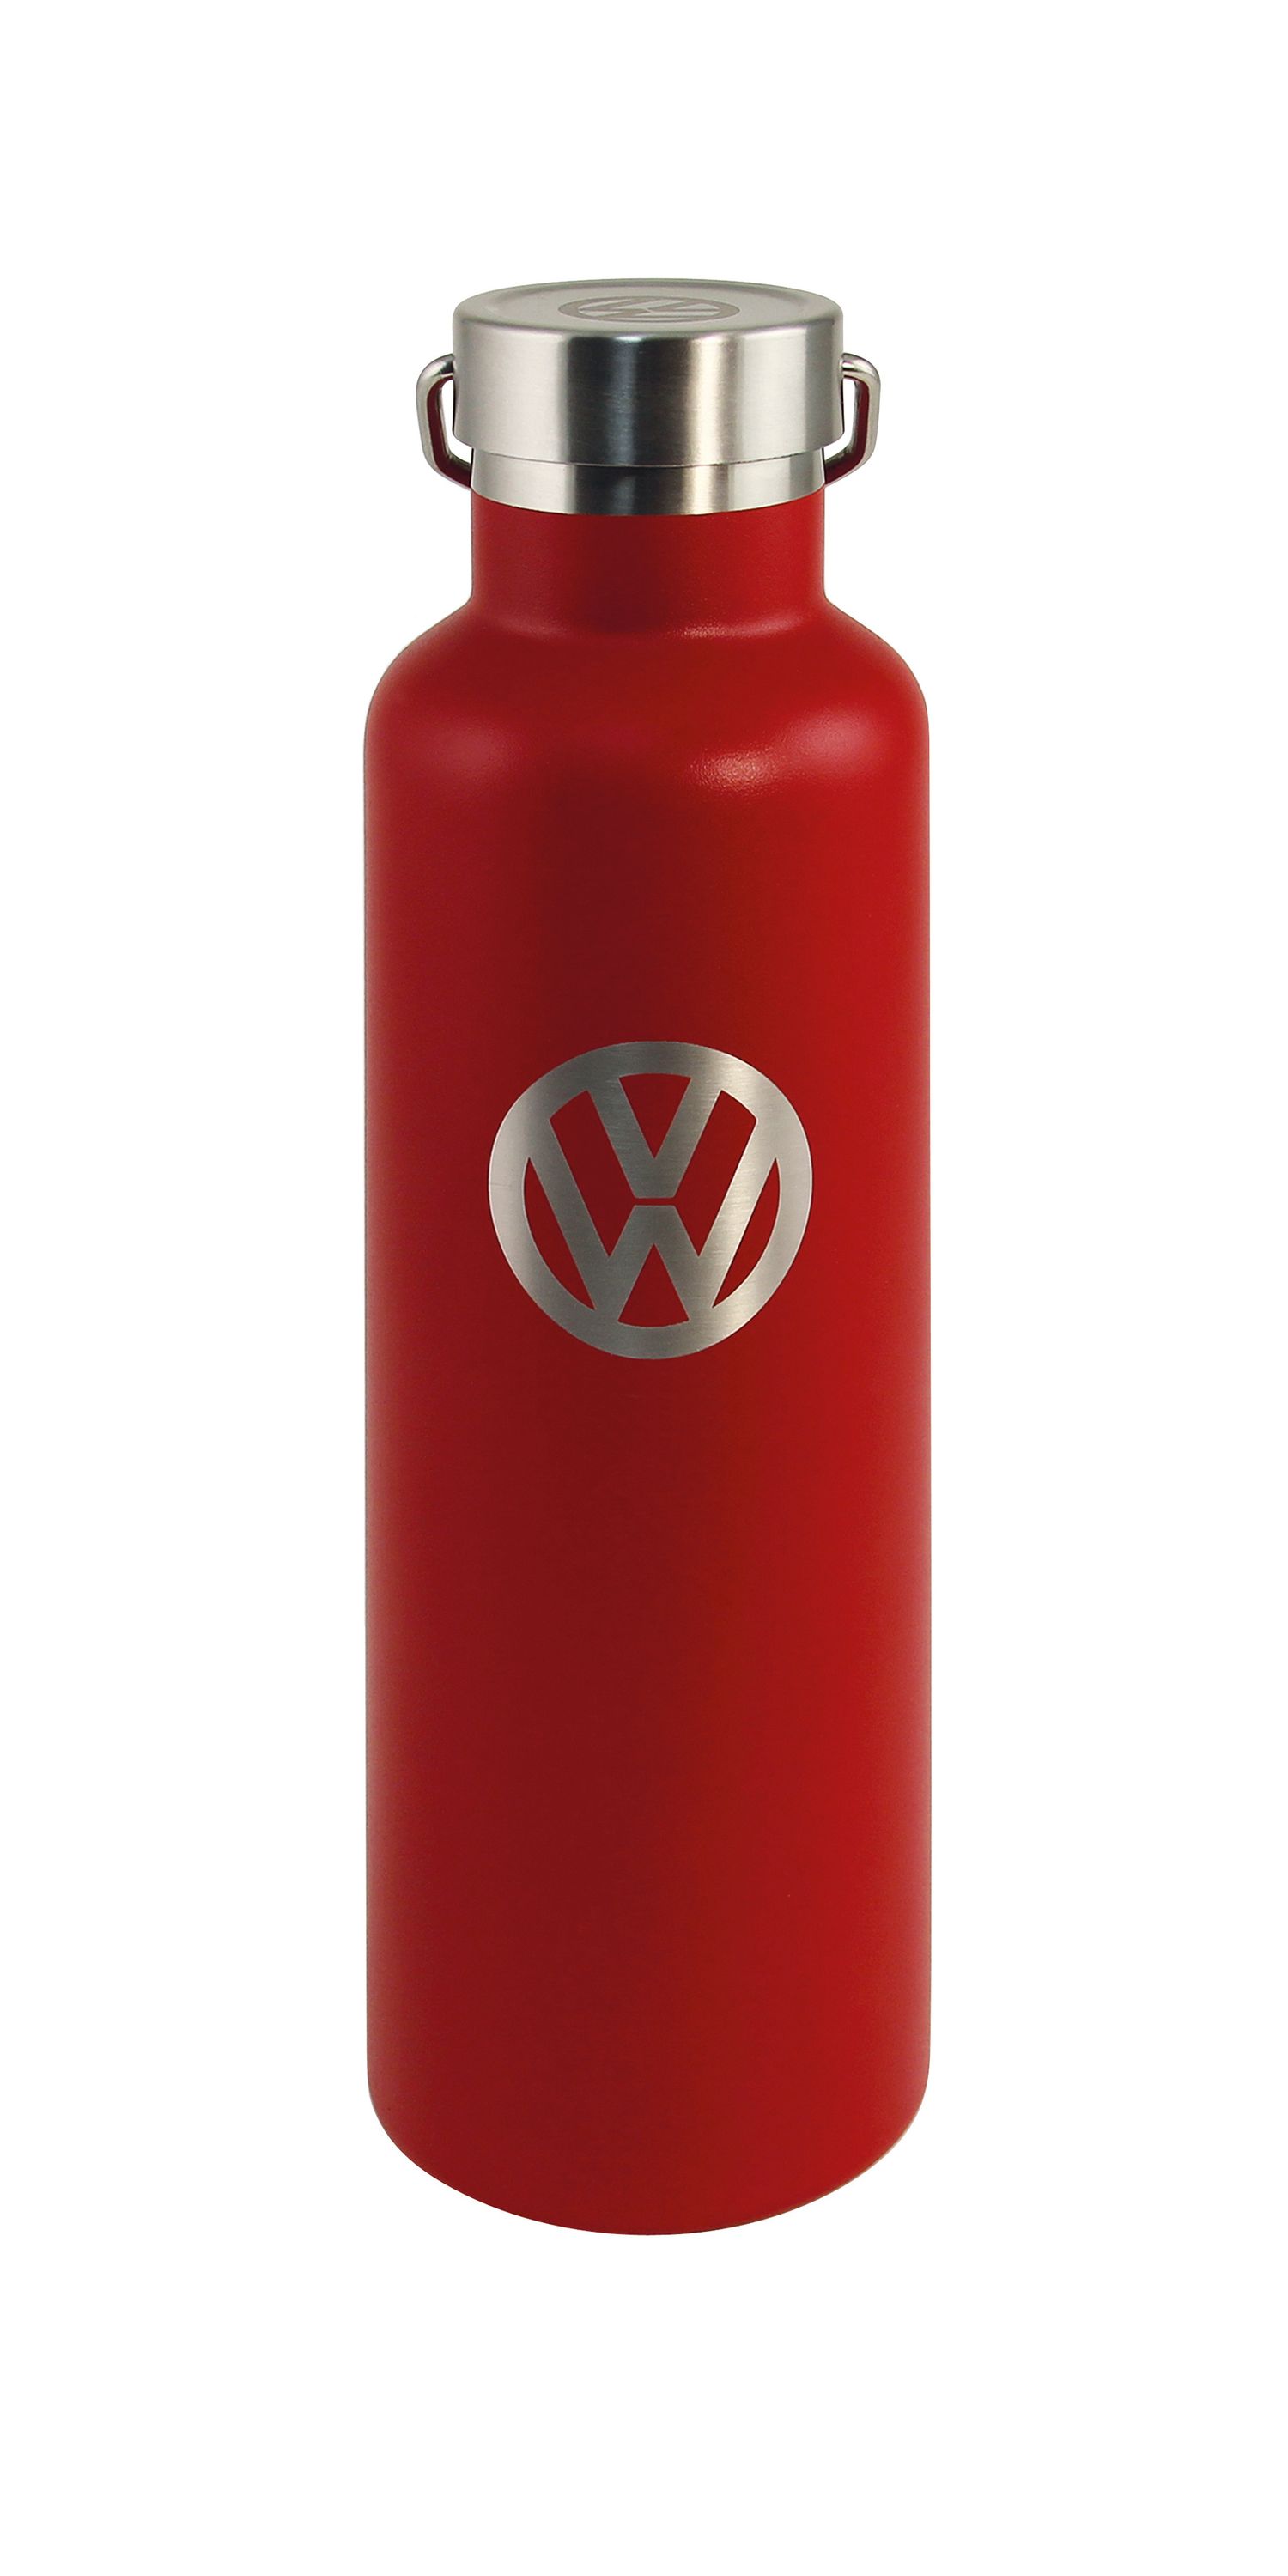 VW Edelstahl Thermo-Trinkflasche, heiß/kalt, 735ml